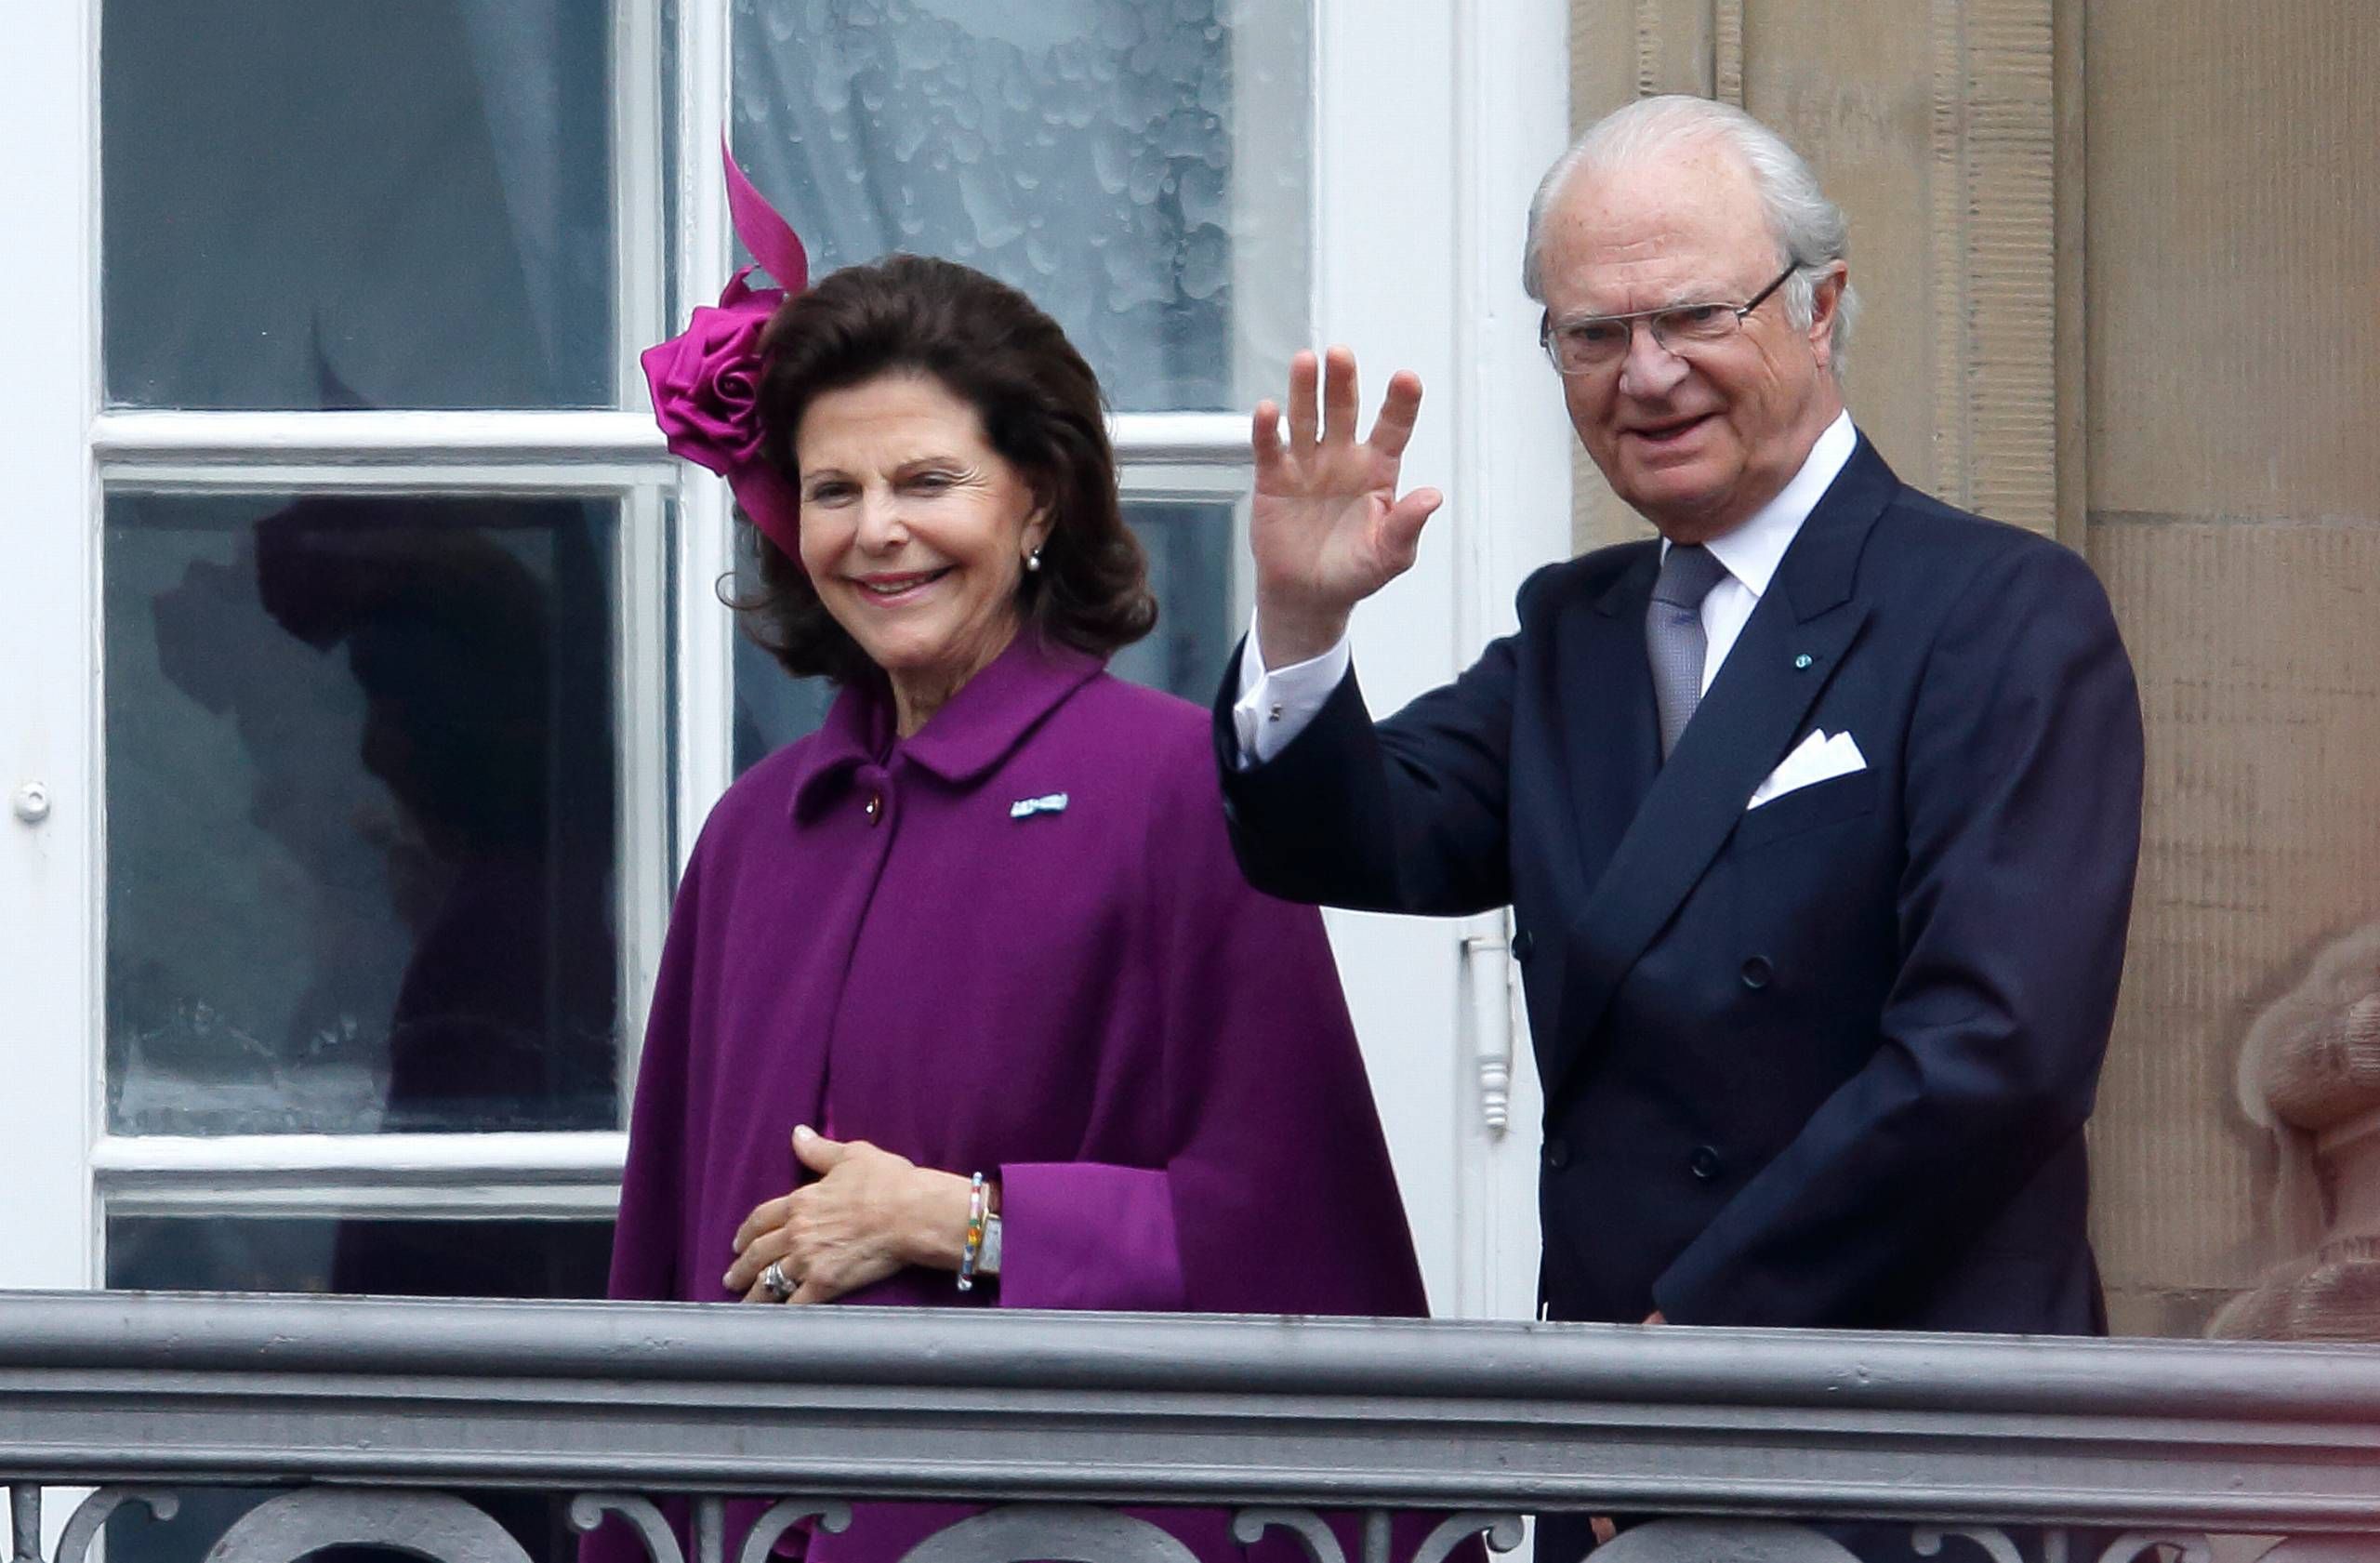 Professor ortodoks at styre Sveriges konge og dronning er testet positive